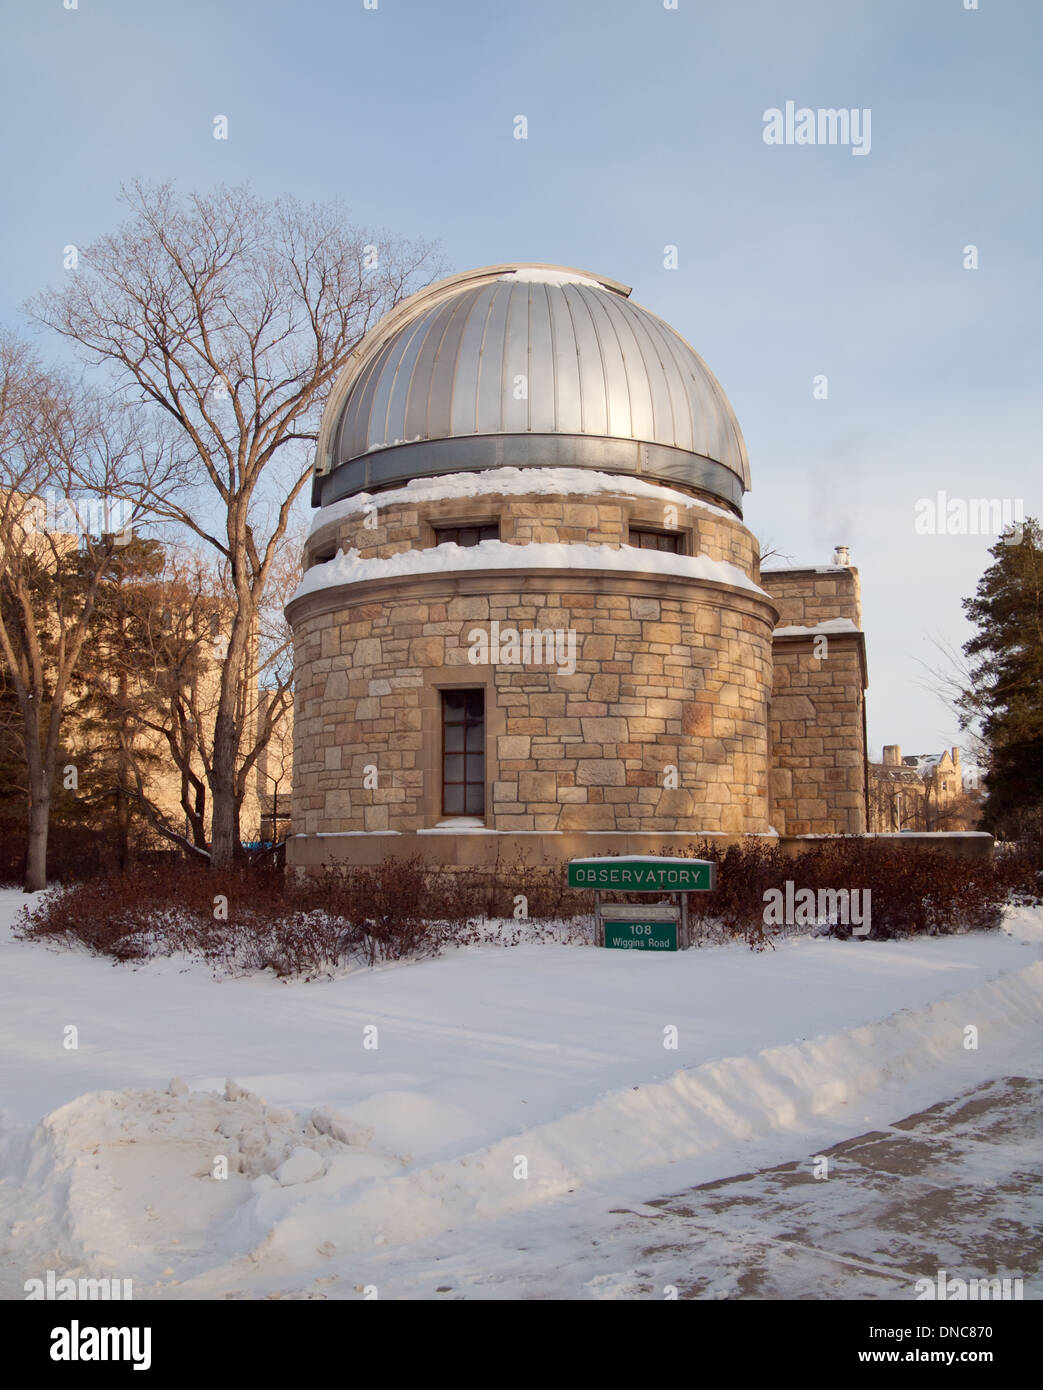 Ein Blick auf das Observatorium der Universität von Saskatchewan im Winter. Saskatoon, Saskatchewan, Kanada. Stockfoto